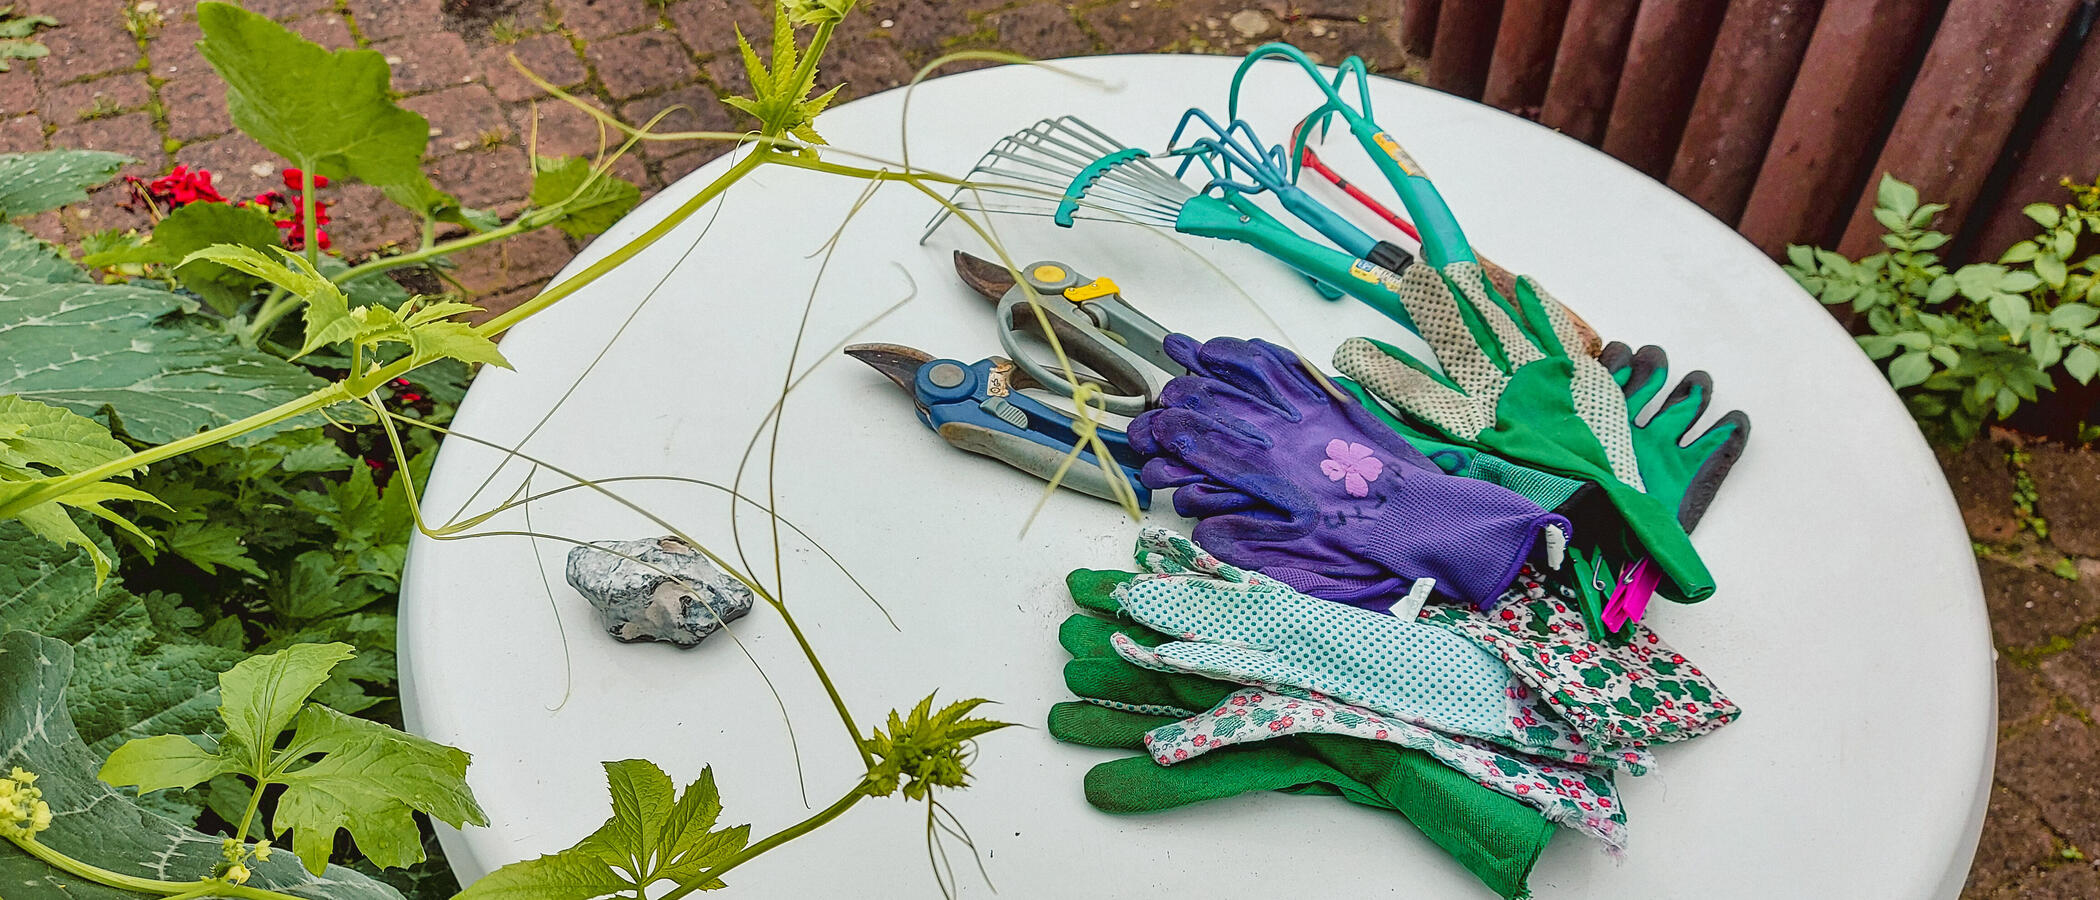 Foto: Gartenwerkzeuge und Arbeitshandschuhe auf einem runden, weißen  Gartentisch